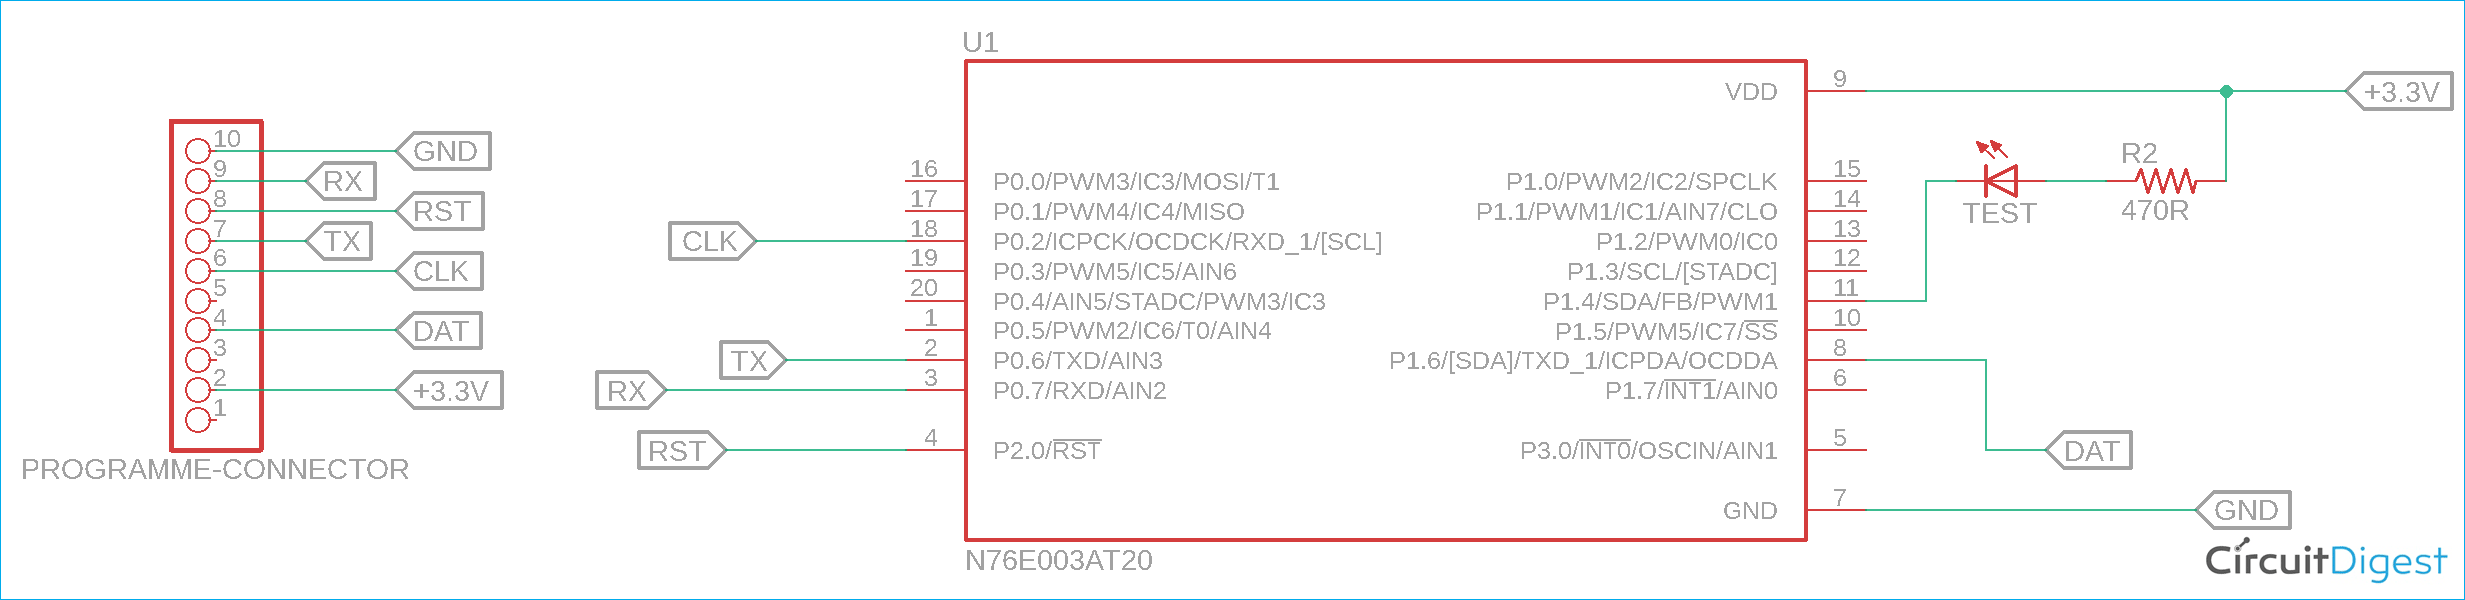 Nuvoton N76E003 Microcontroller Circuit Diagram